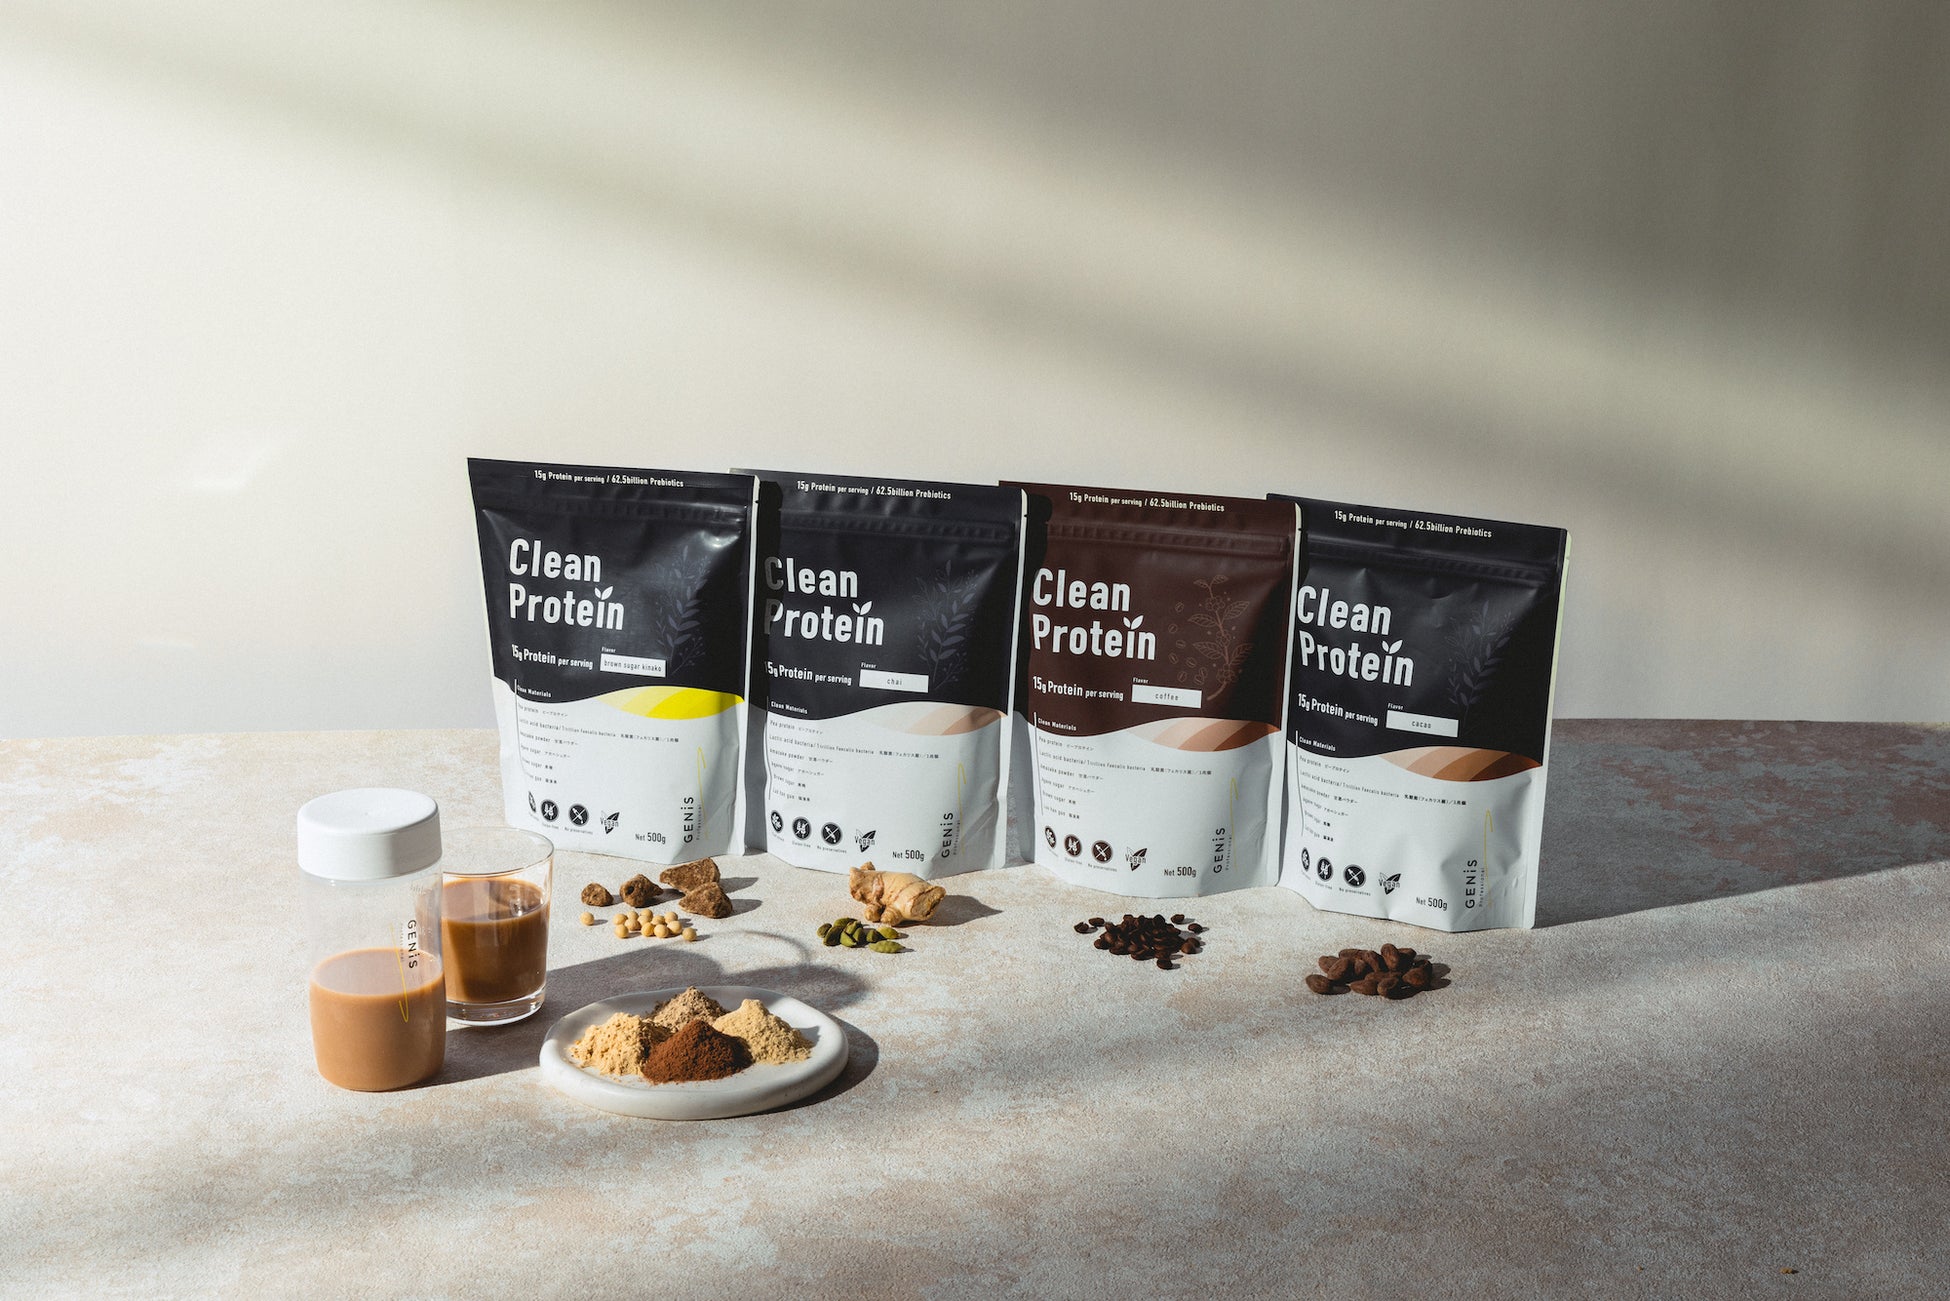 【人工甘味料不使用プロテイン】乳酸菌1兆個配合のGENiS クリーンプロテインに新フレーバー“チャイ”“コーヒー”が新発売。天然スパイスとブラジル産コーヒーを使用した本格フレーバーが登場。